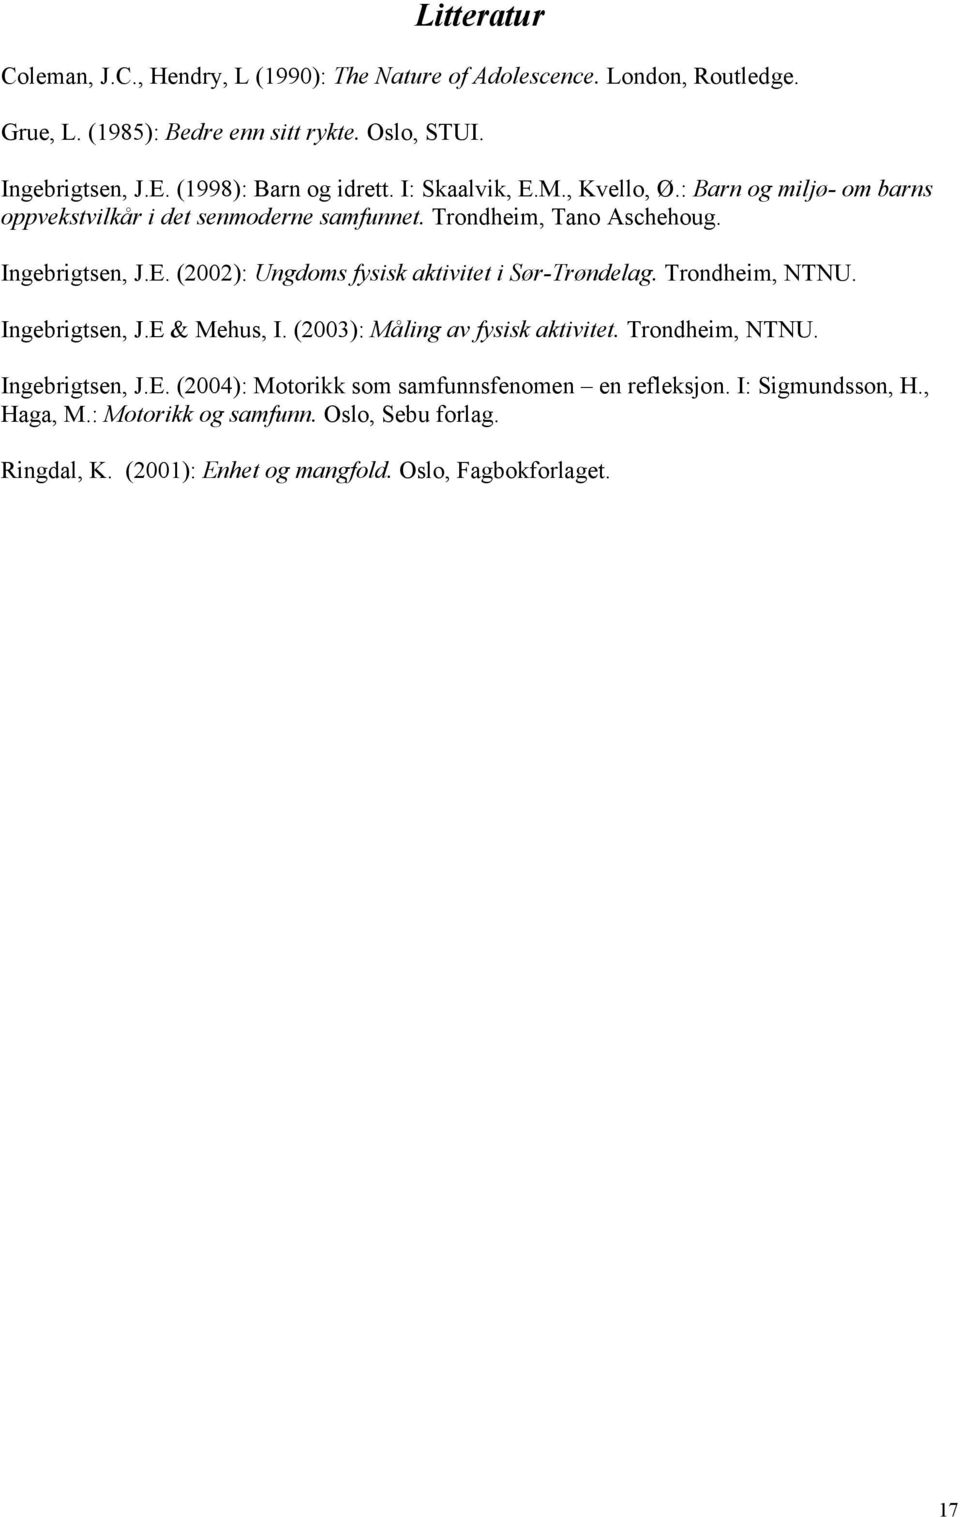 Trondheim, NTNU. Ingebrigtsen, J.E & Mehus, I. (2003): Måling av fysisk aktivitet. Trondheim, NTNU. Ingebrigtsen, J.E. (2004): Motorikk som samfunnsfenomen en refleksjon.